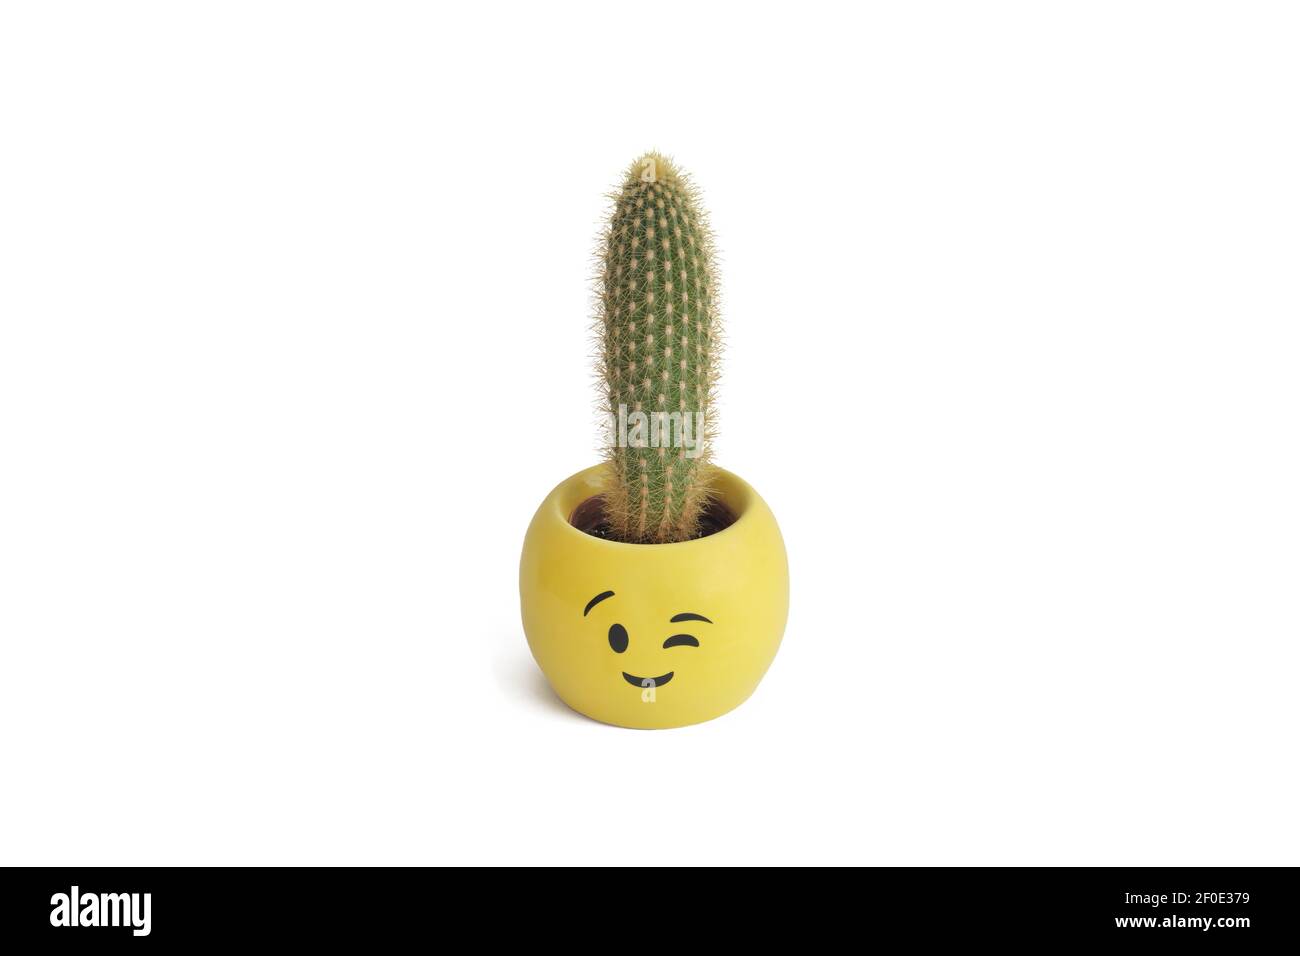 Kaktus in EINEM Yellow Pot mit Smiley Gesichtsausdruck gepflanzt, isoliert auf weißem Hintergrund Stockfoto